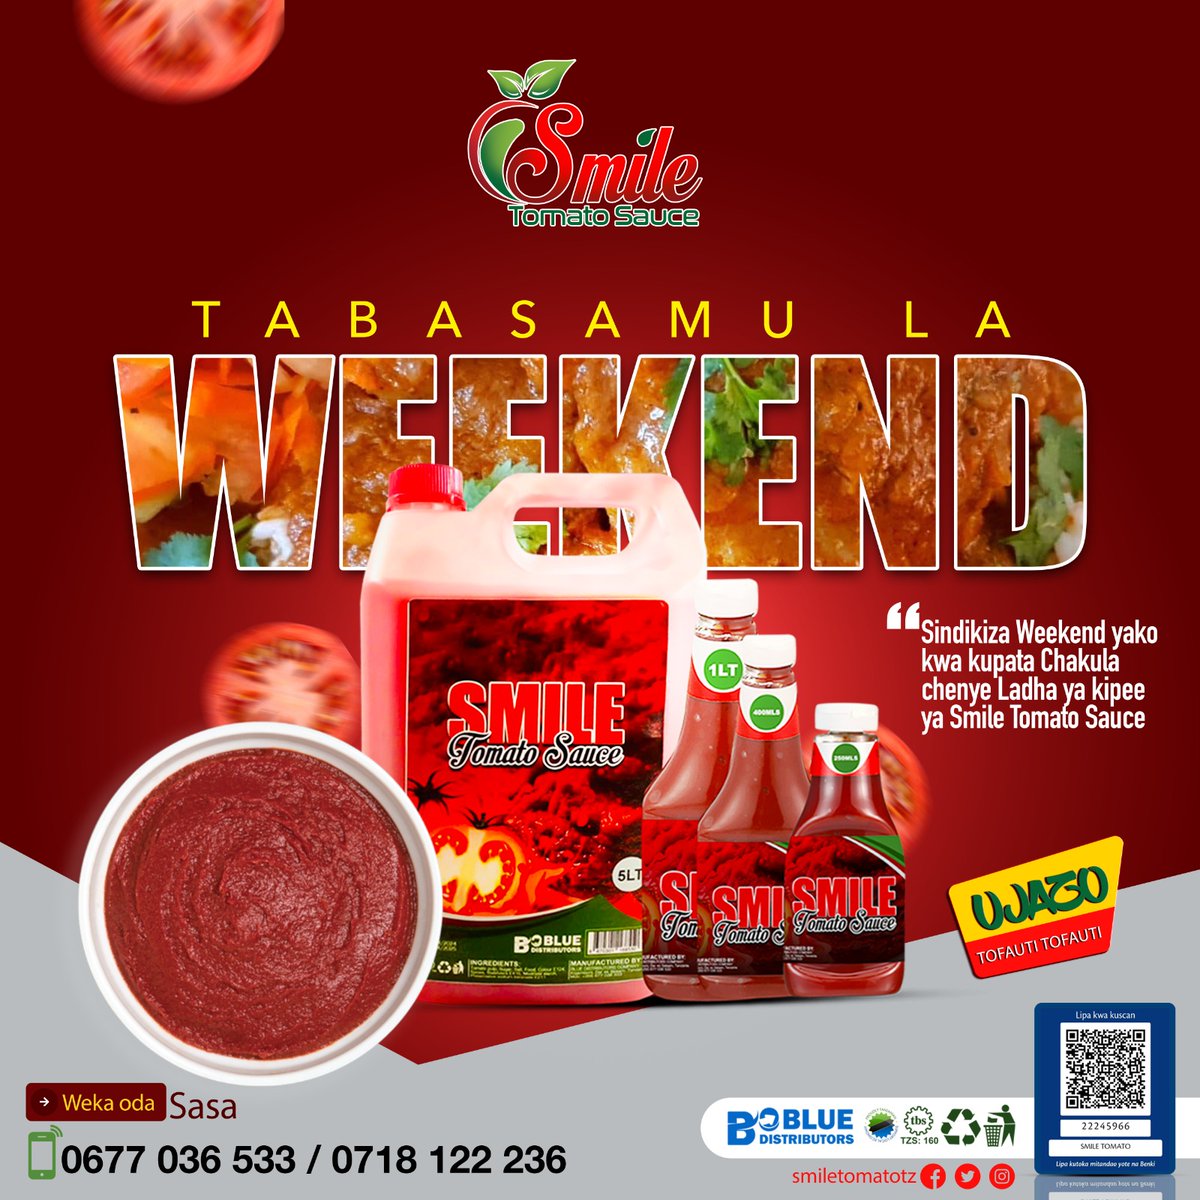 Hakikisha weekend haikupiti bila kunogesha chakula chako na Smile Tomato Sauce. Tabasamu la Weekend linaletwa kwenu kwa 'Bidhaa Halisi kwa Chakula Bora'. #SmileNaTomato